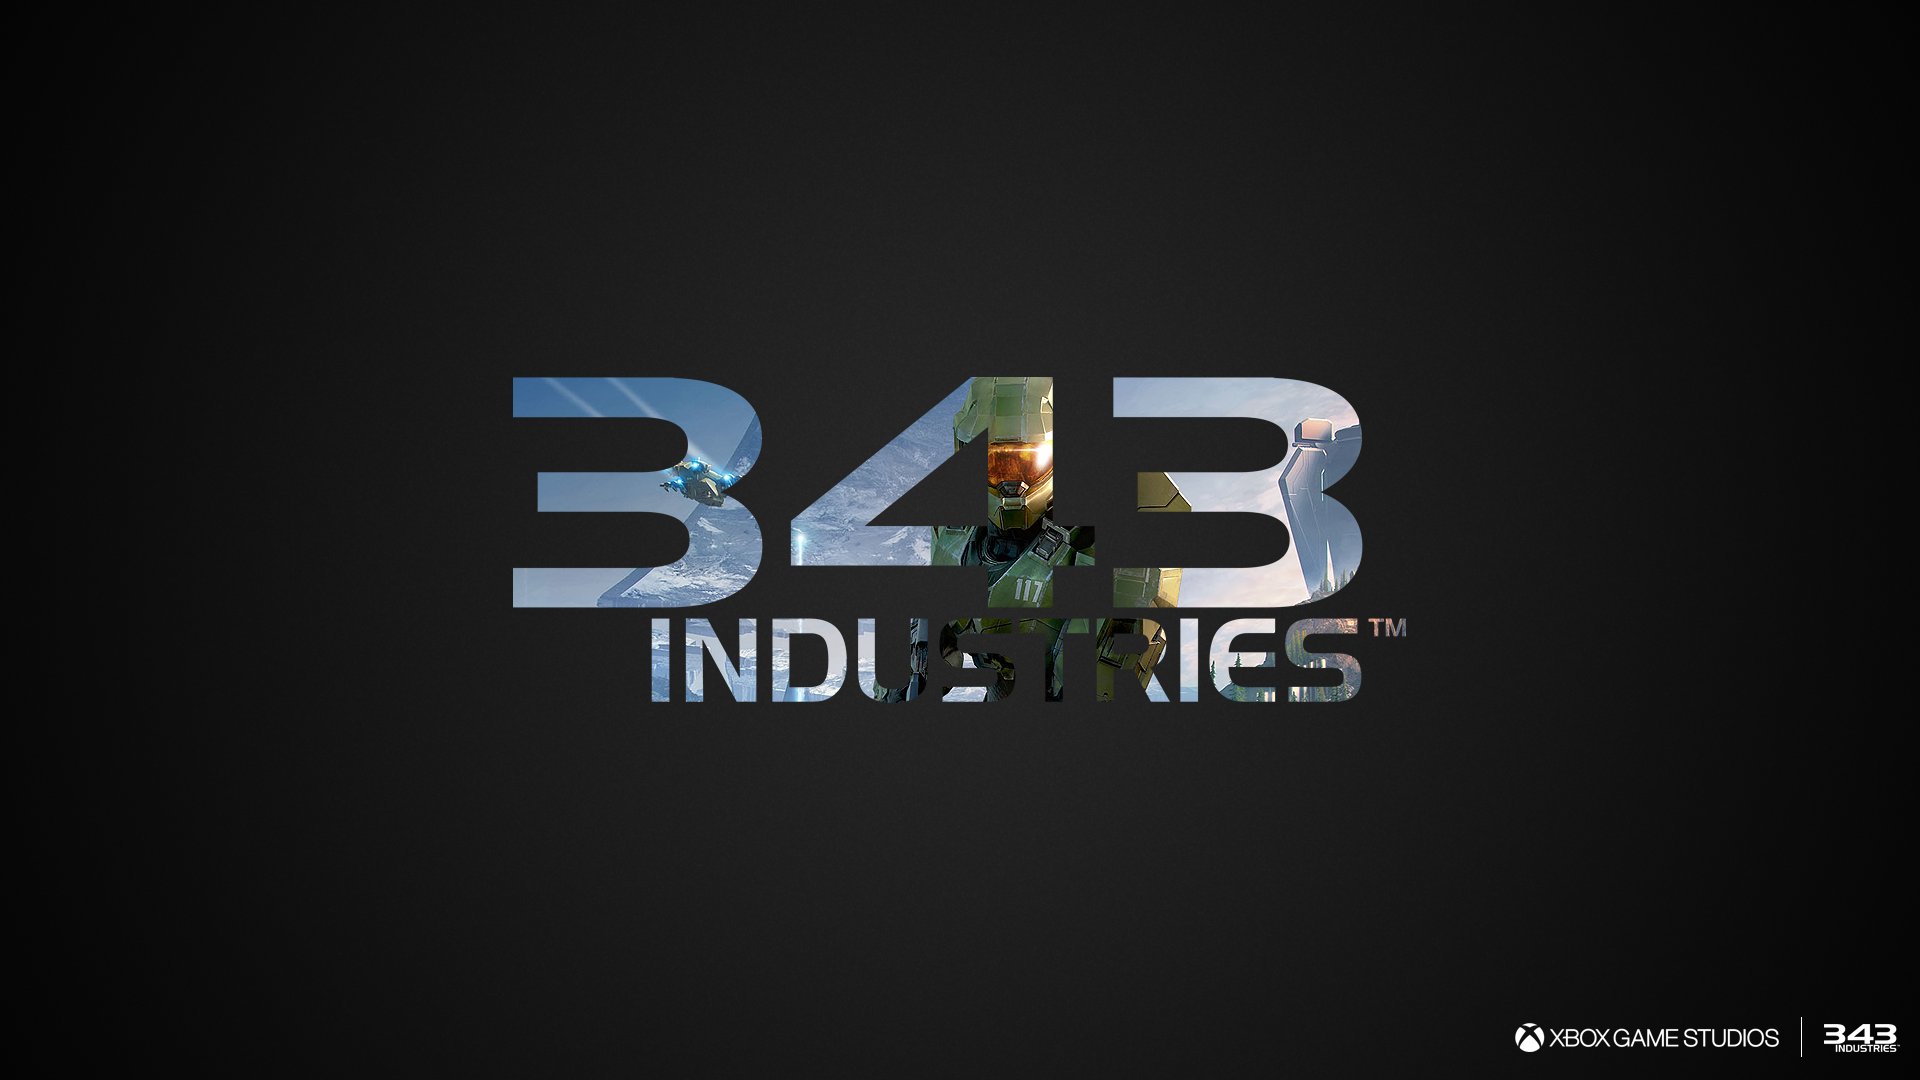 343 Industreis seguirá desarrollando Halo y utilizando el motor Unreal Engine en futuros proyectos